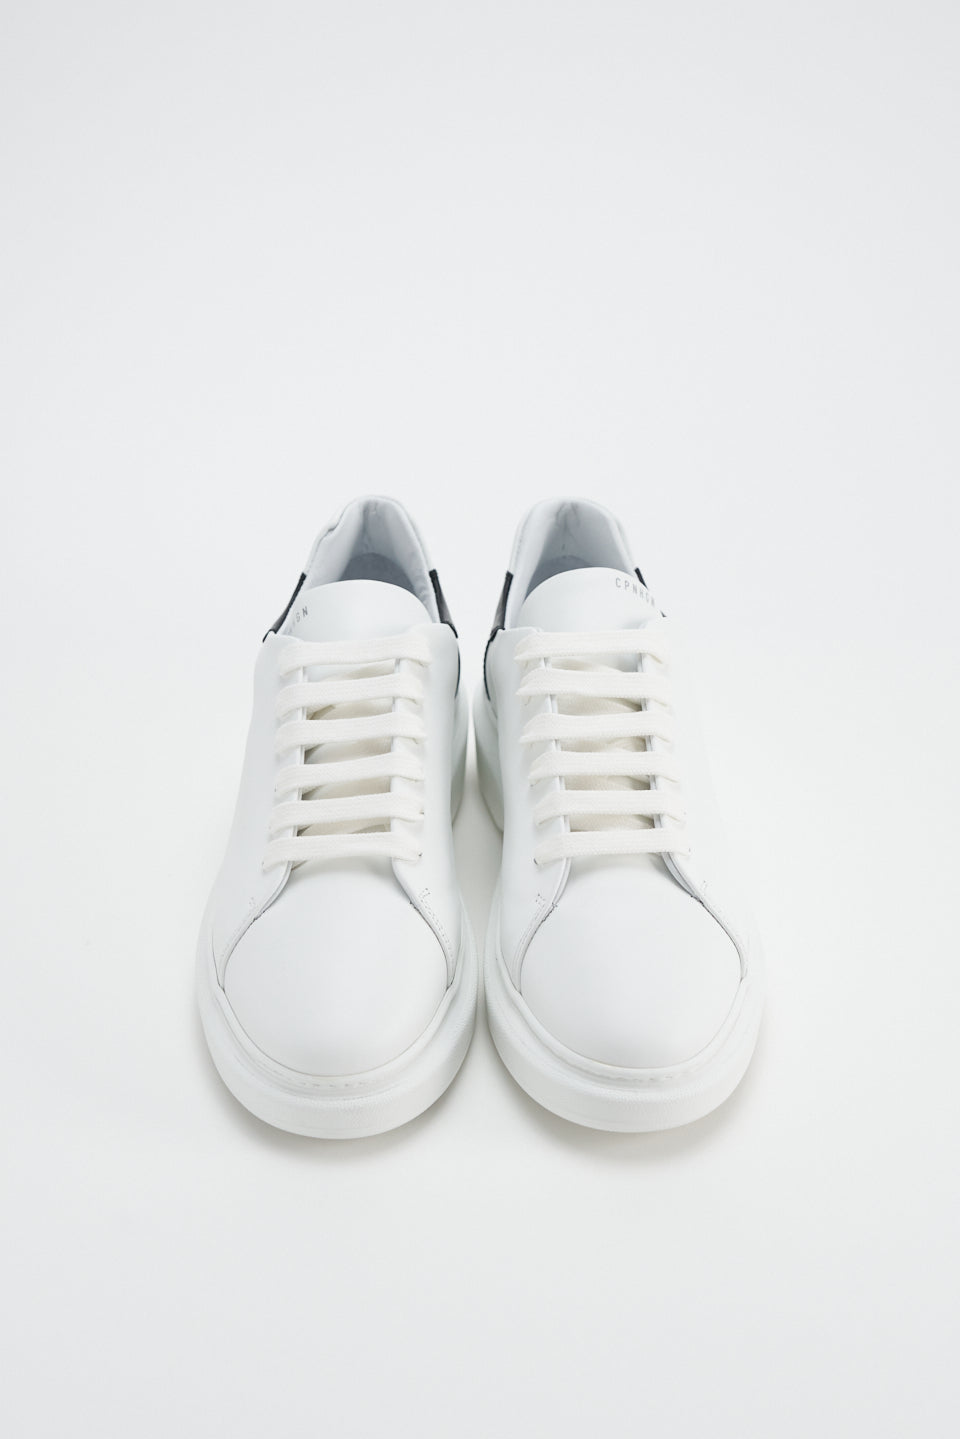 Vitello White Black Chunky Sneakers CPH812 - 10